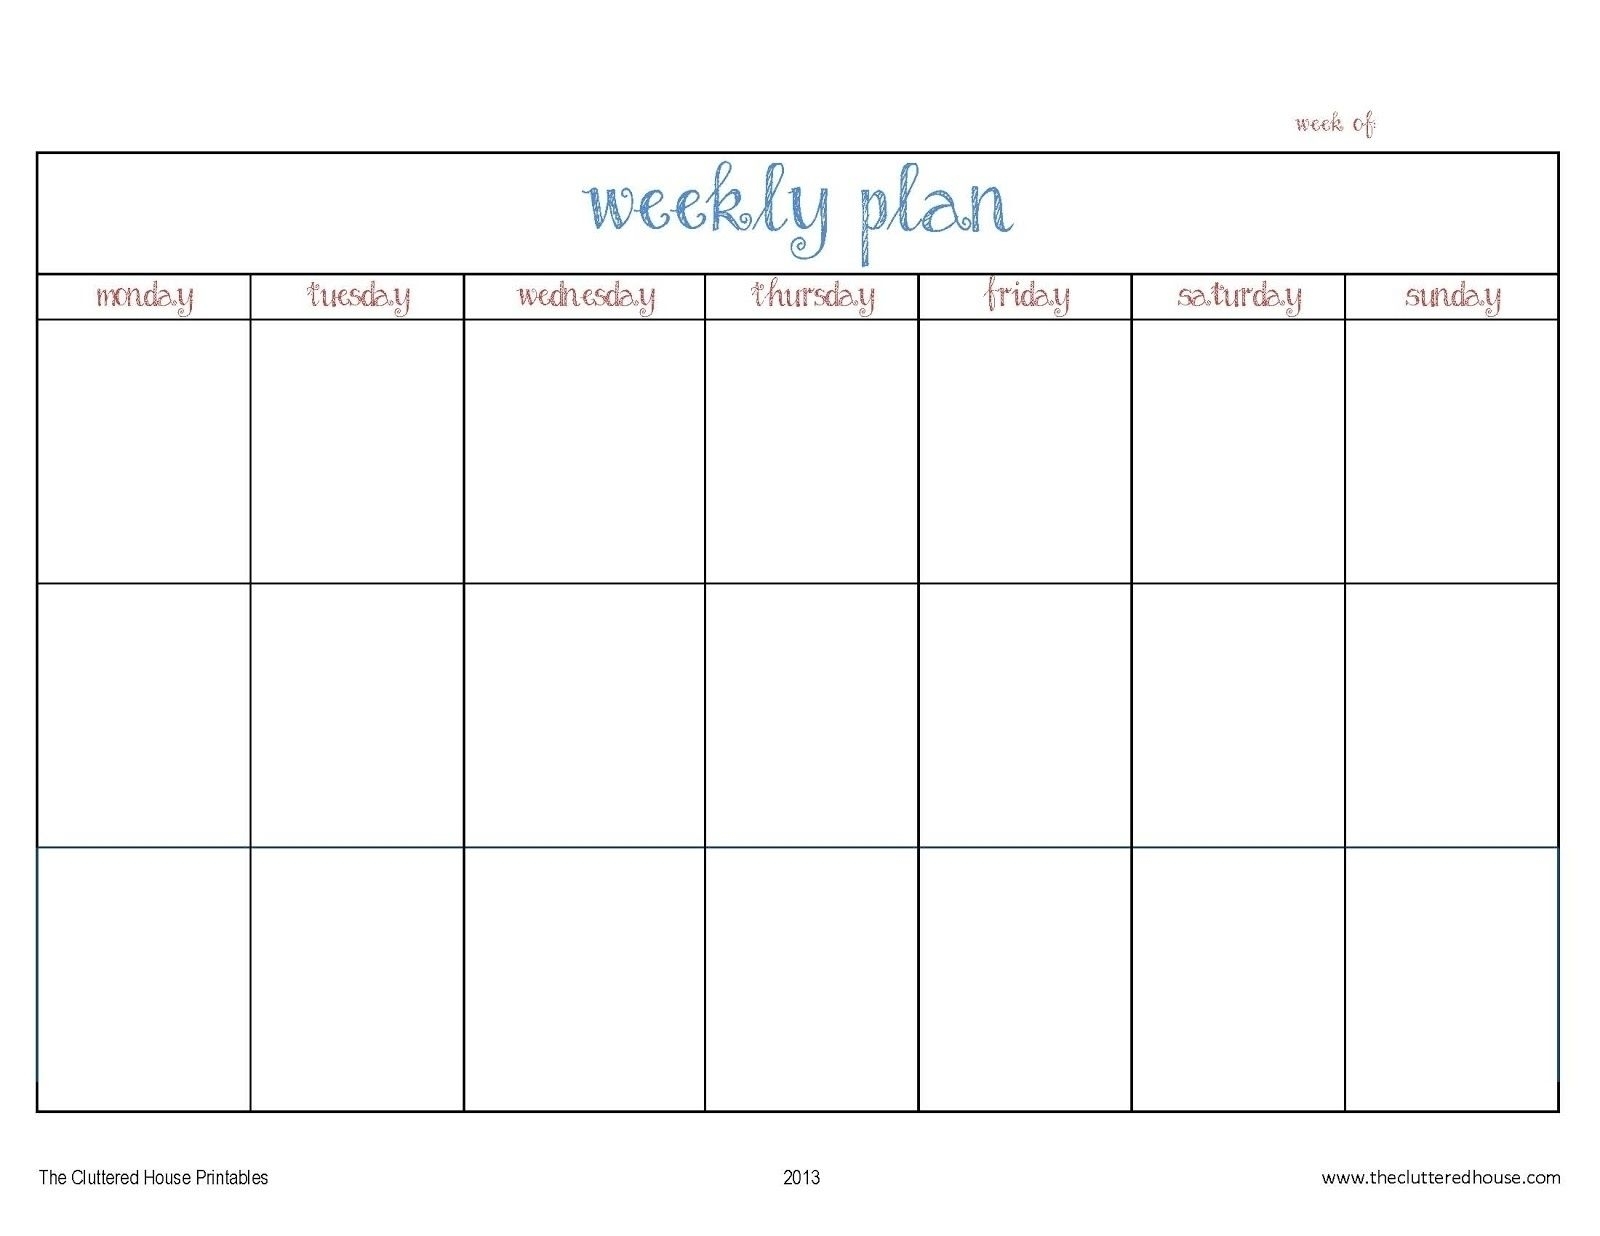 Day Lank Calendar Free Week Template Printable Schedule | Smorad inside Blank 7 Day Week Calendar